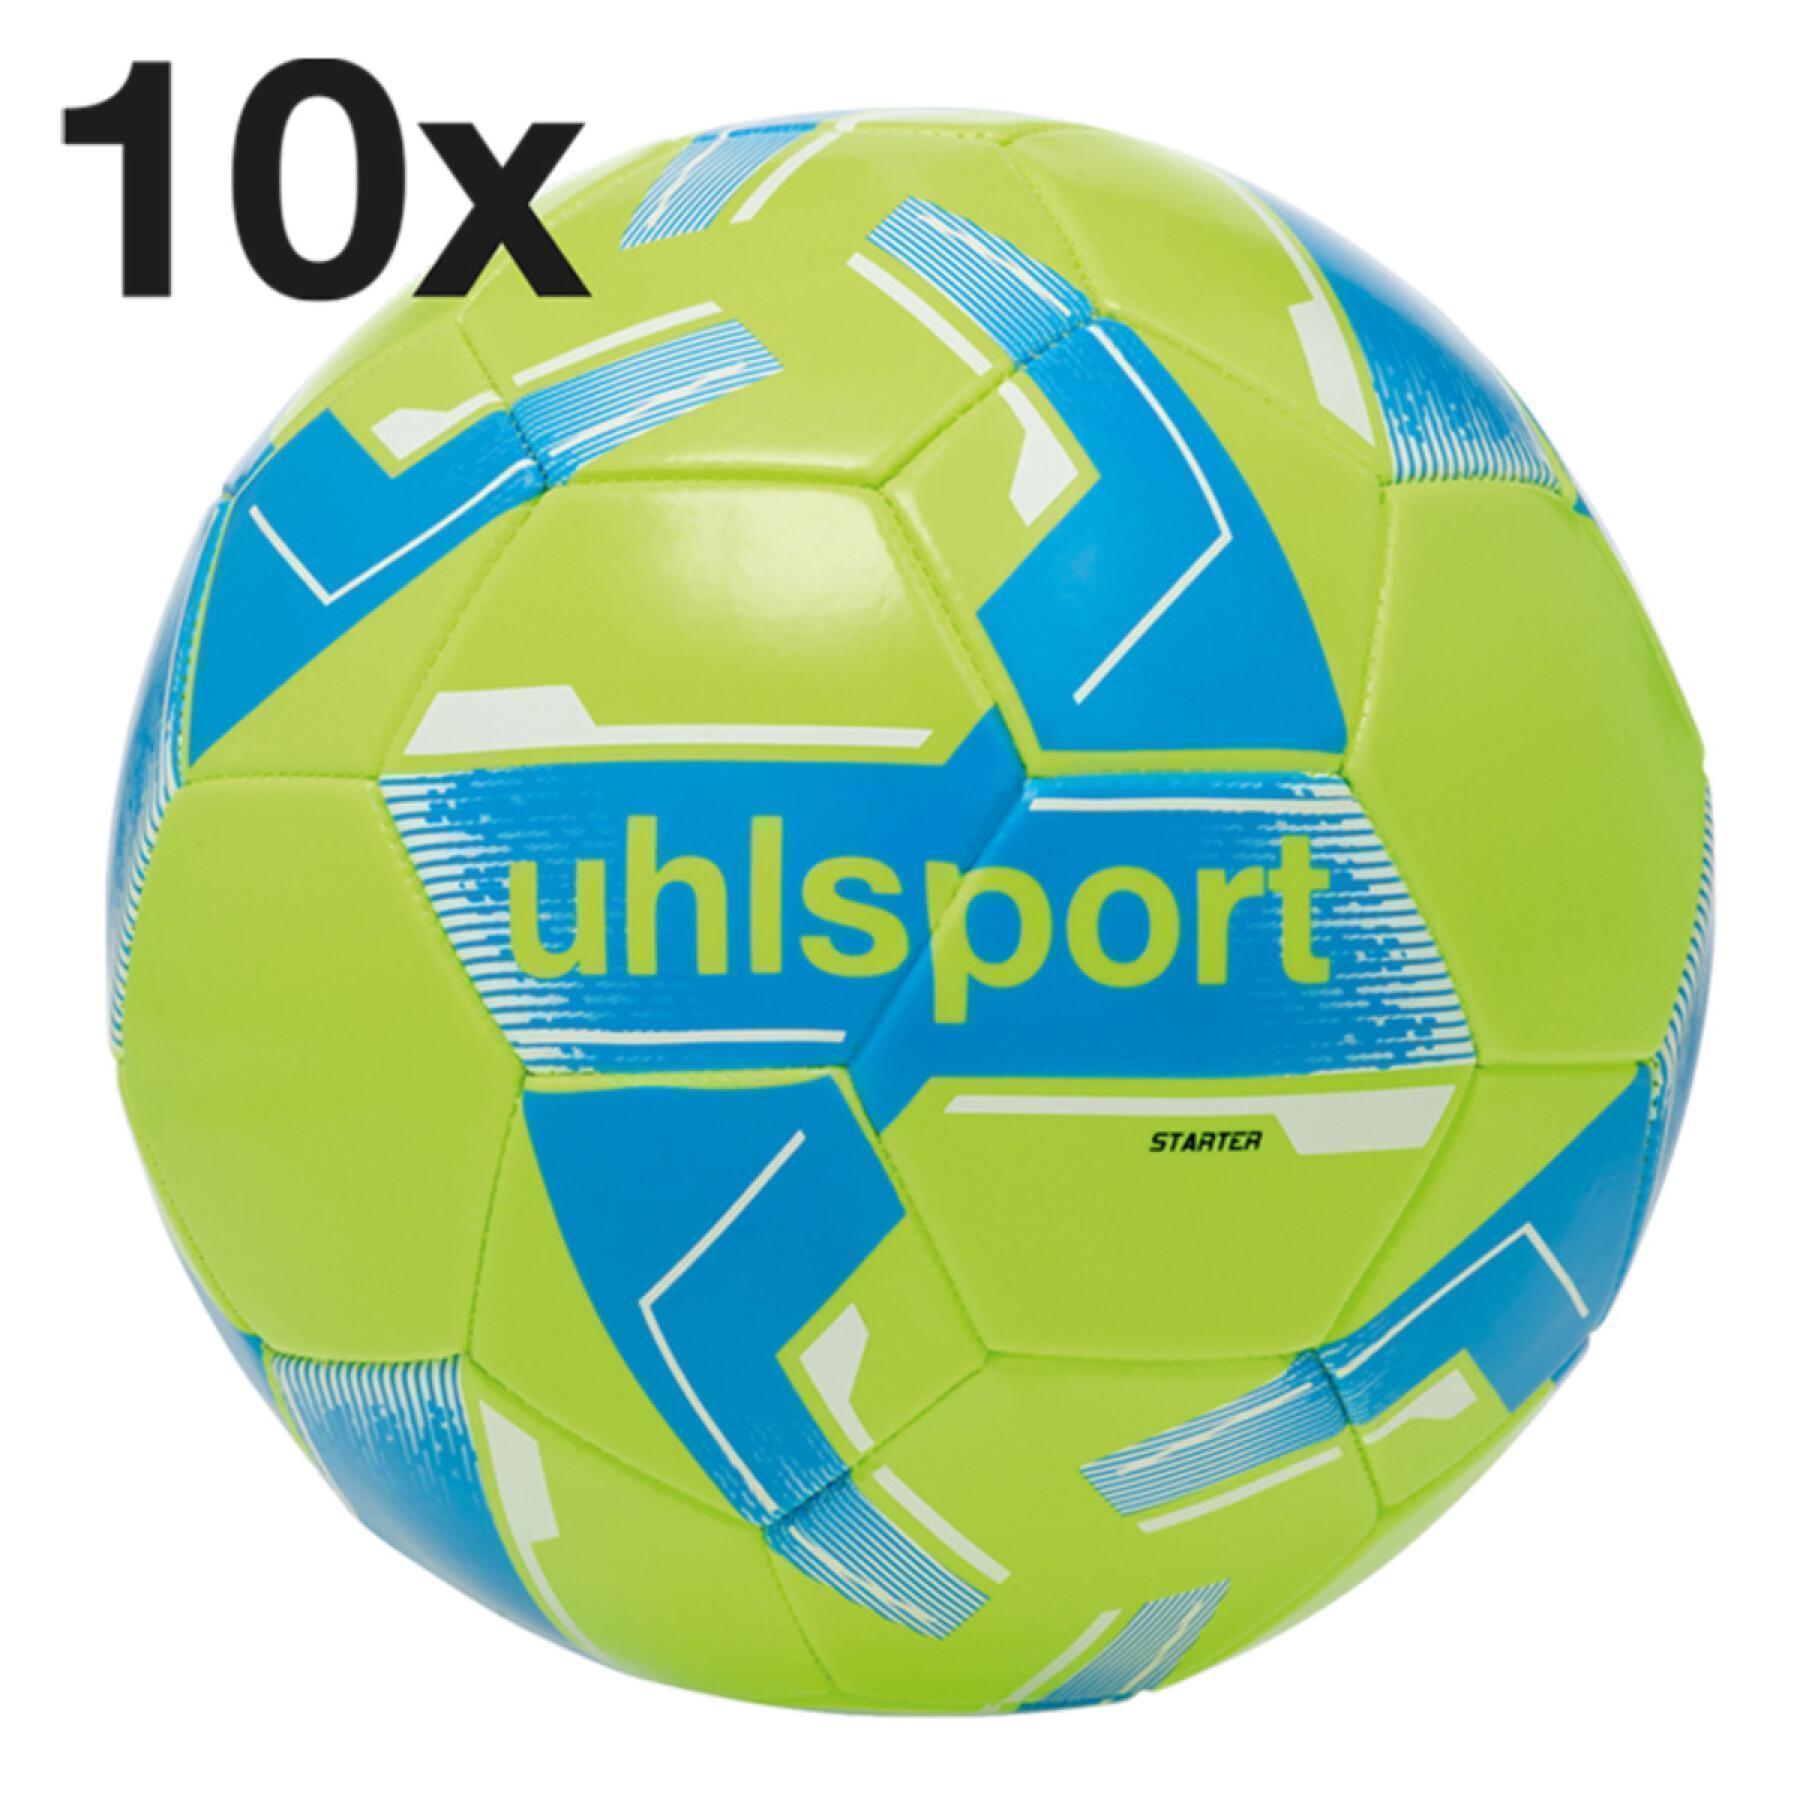 Confezione da 4 x 10 palloncini Uhlsport Starter